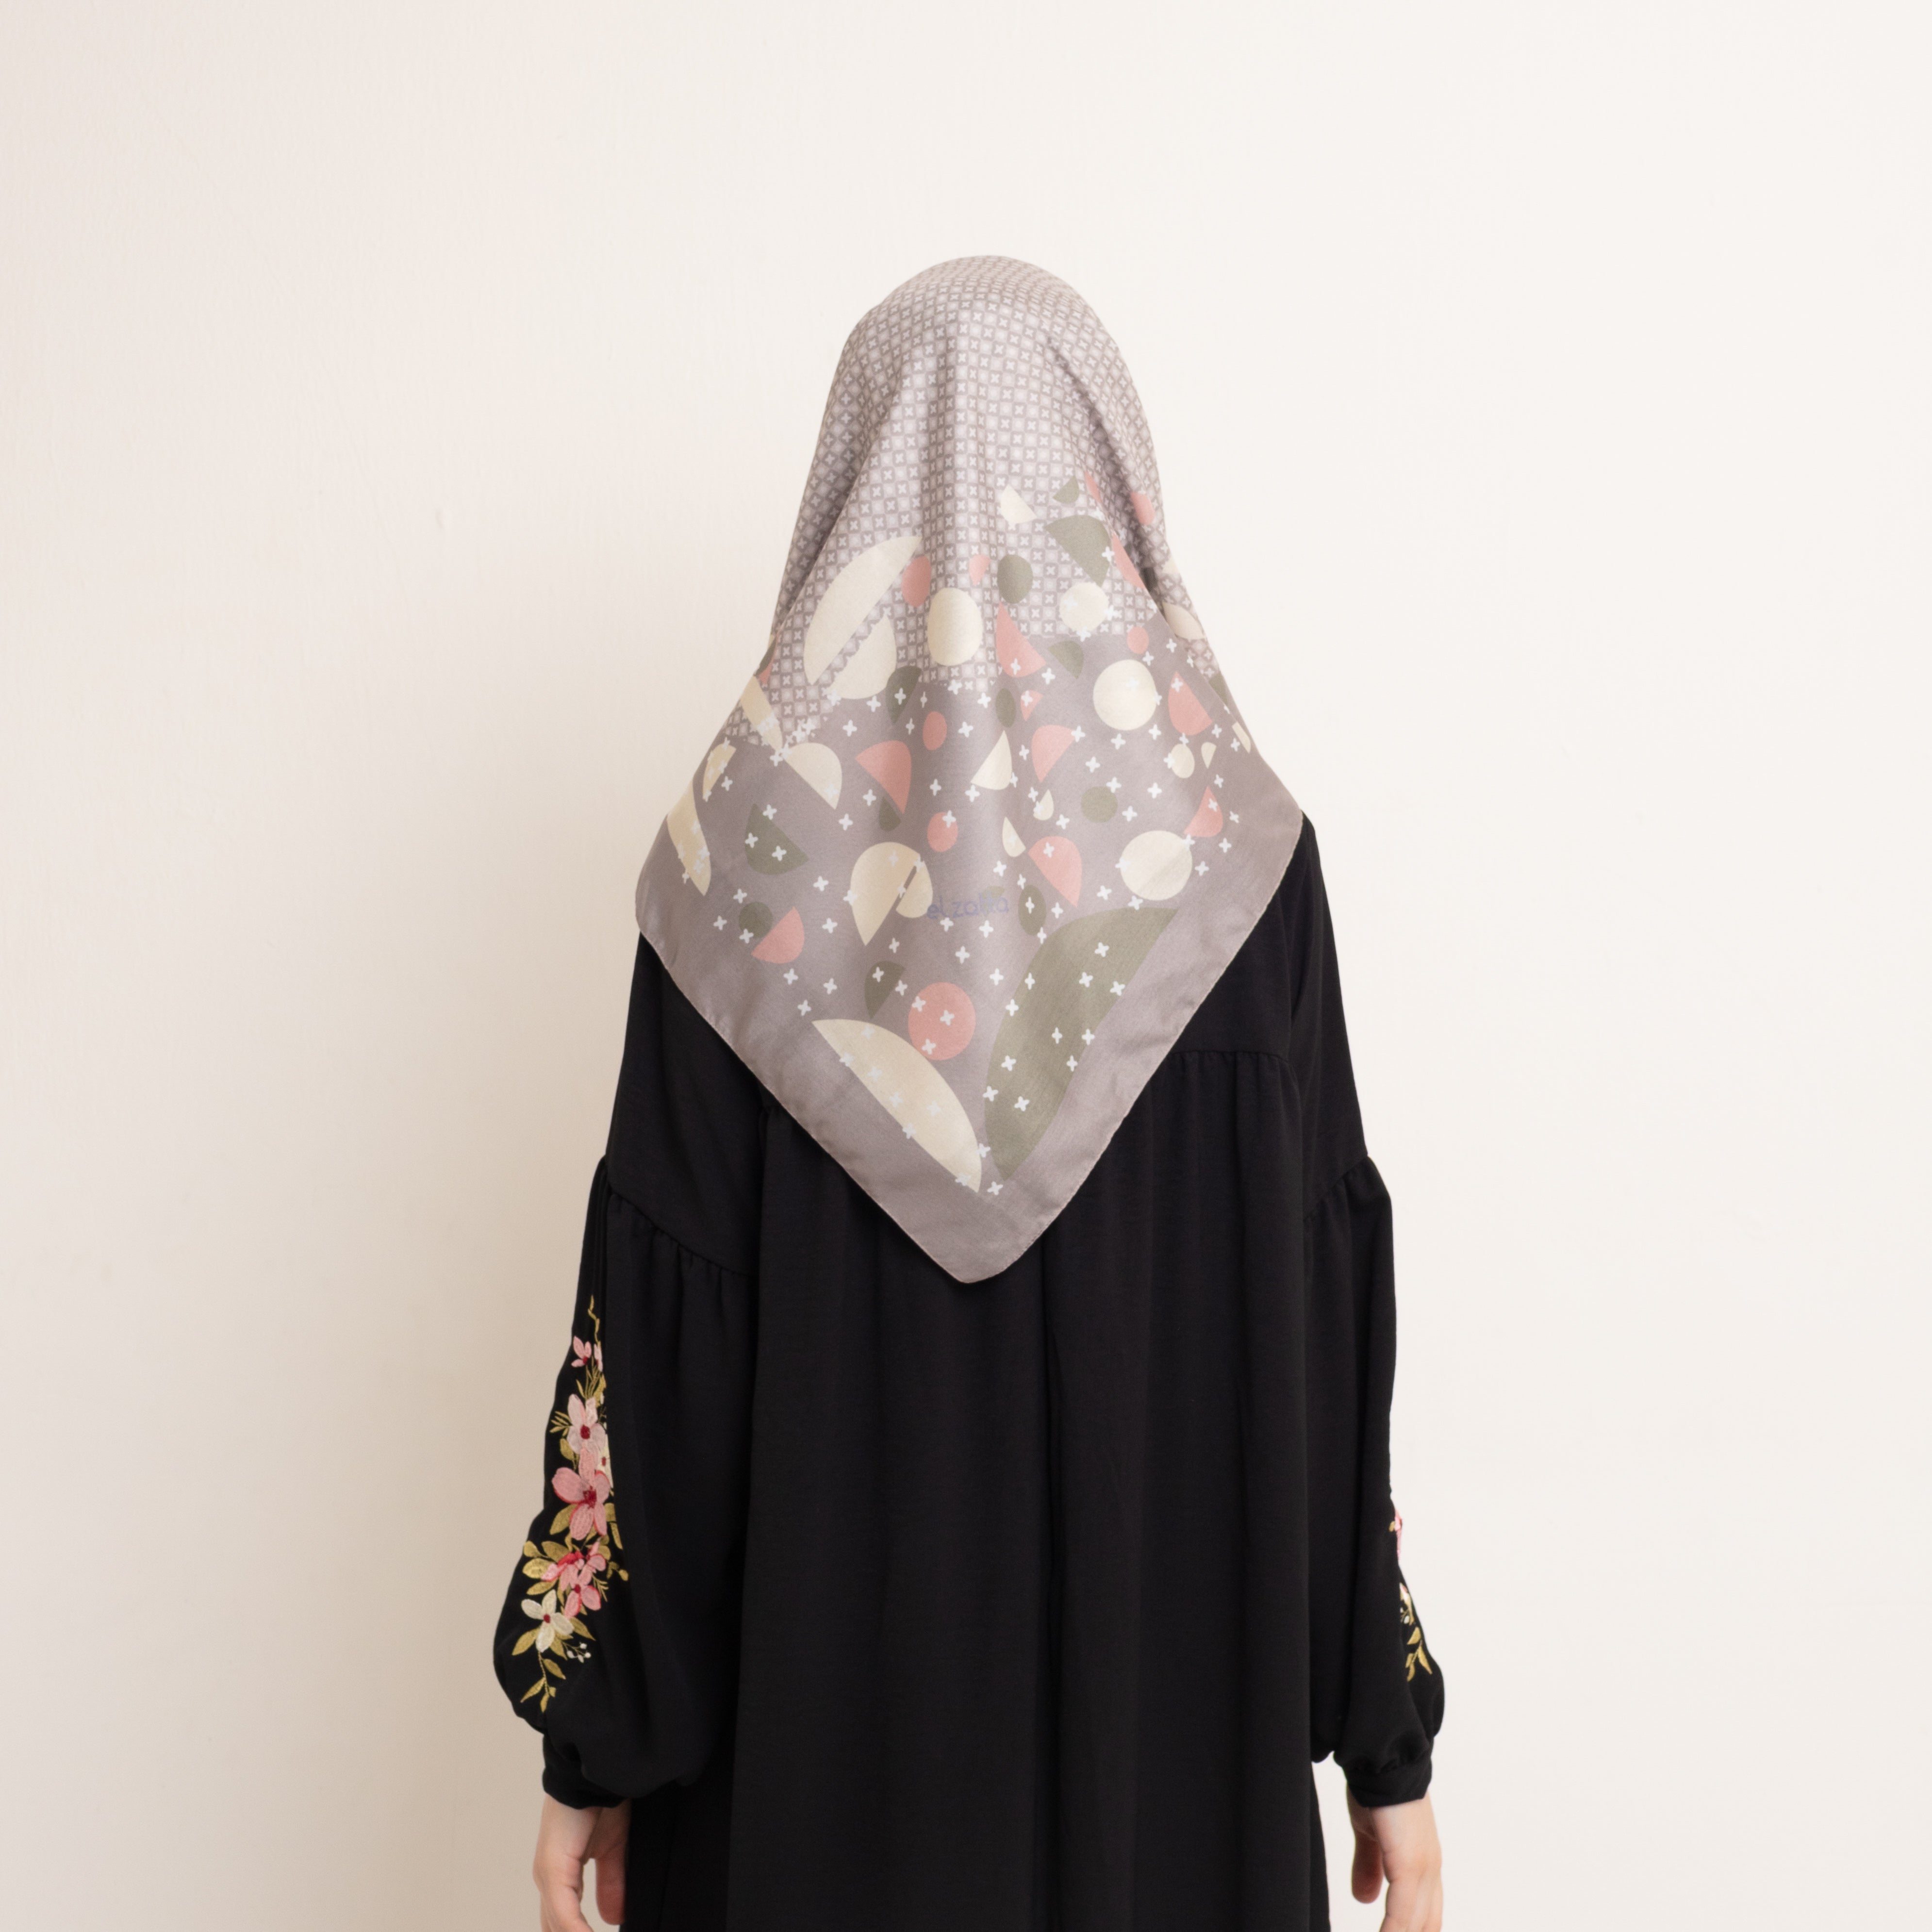 Elzatta Hijab Segiempat Kaila Flower Island